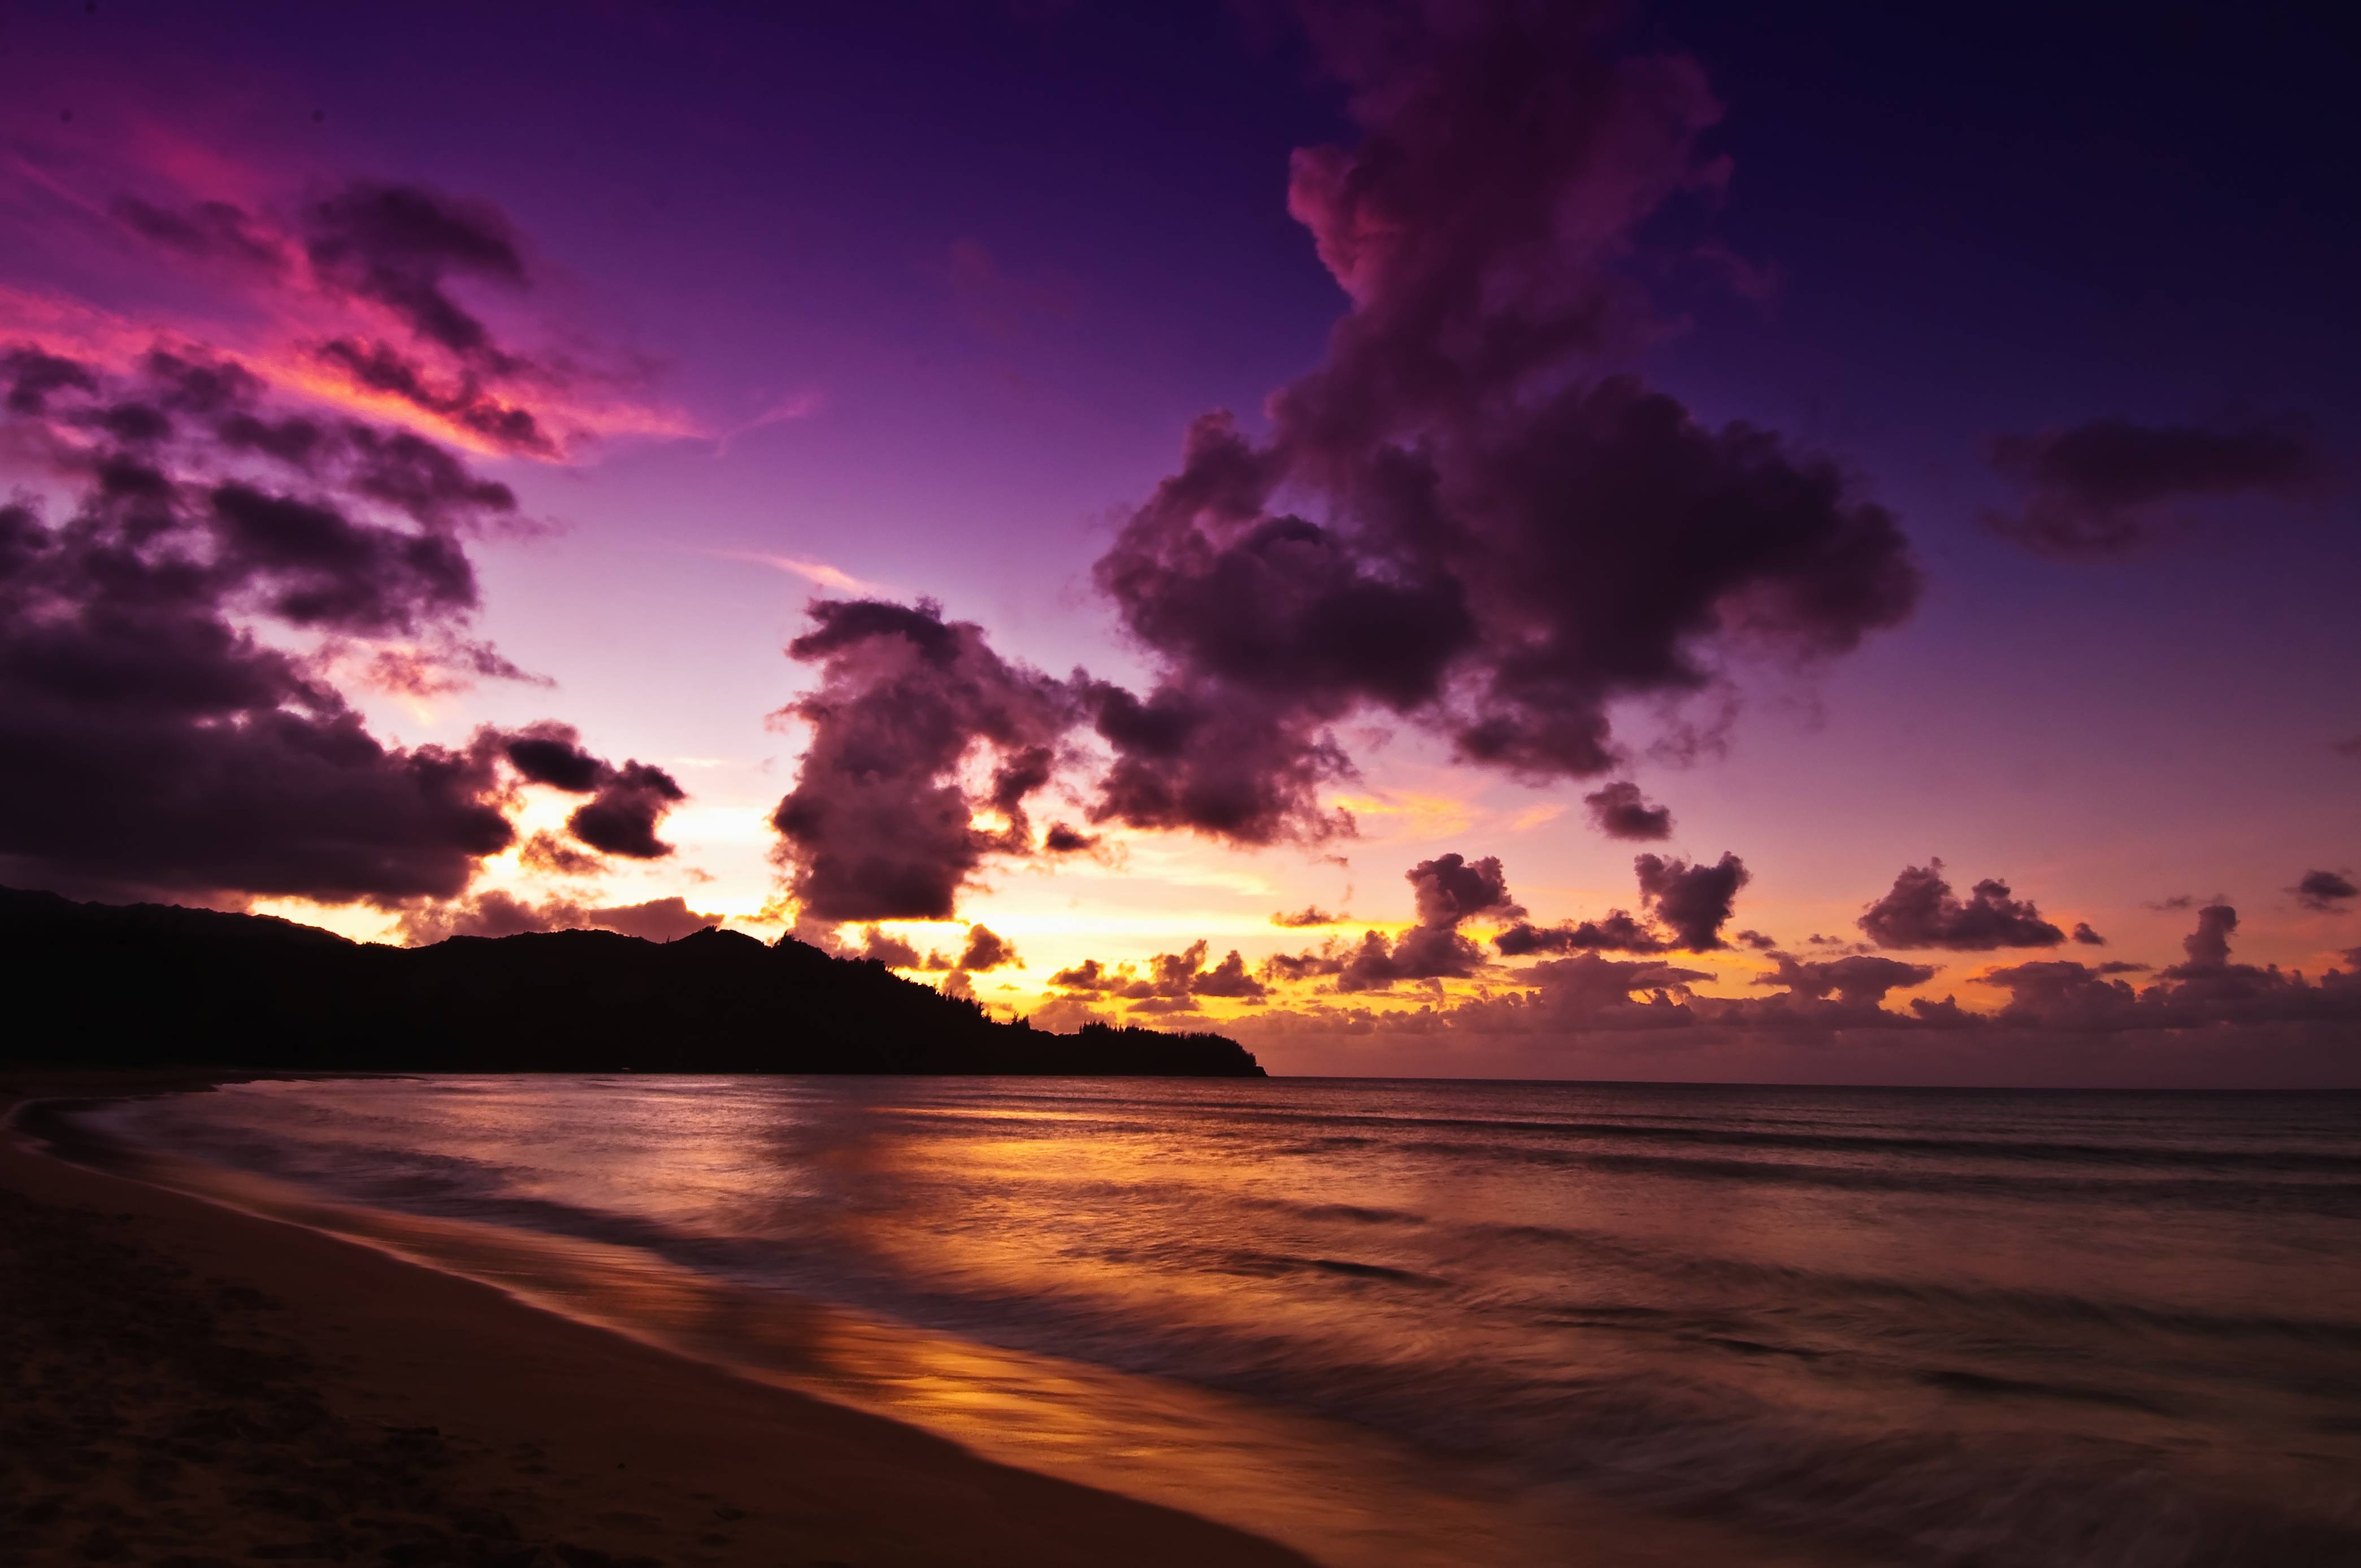 Hawii Background - Hawaii Desktop Wallpapers Island Pc Beach Hawaiian ...